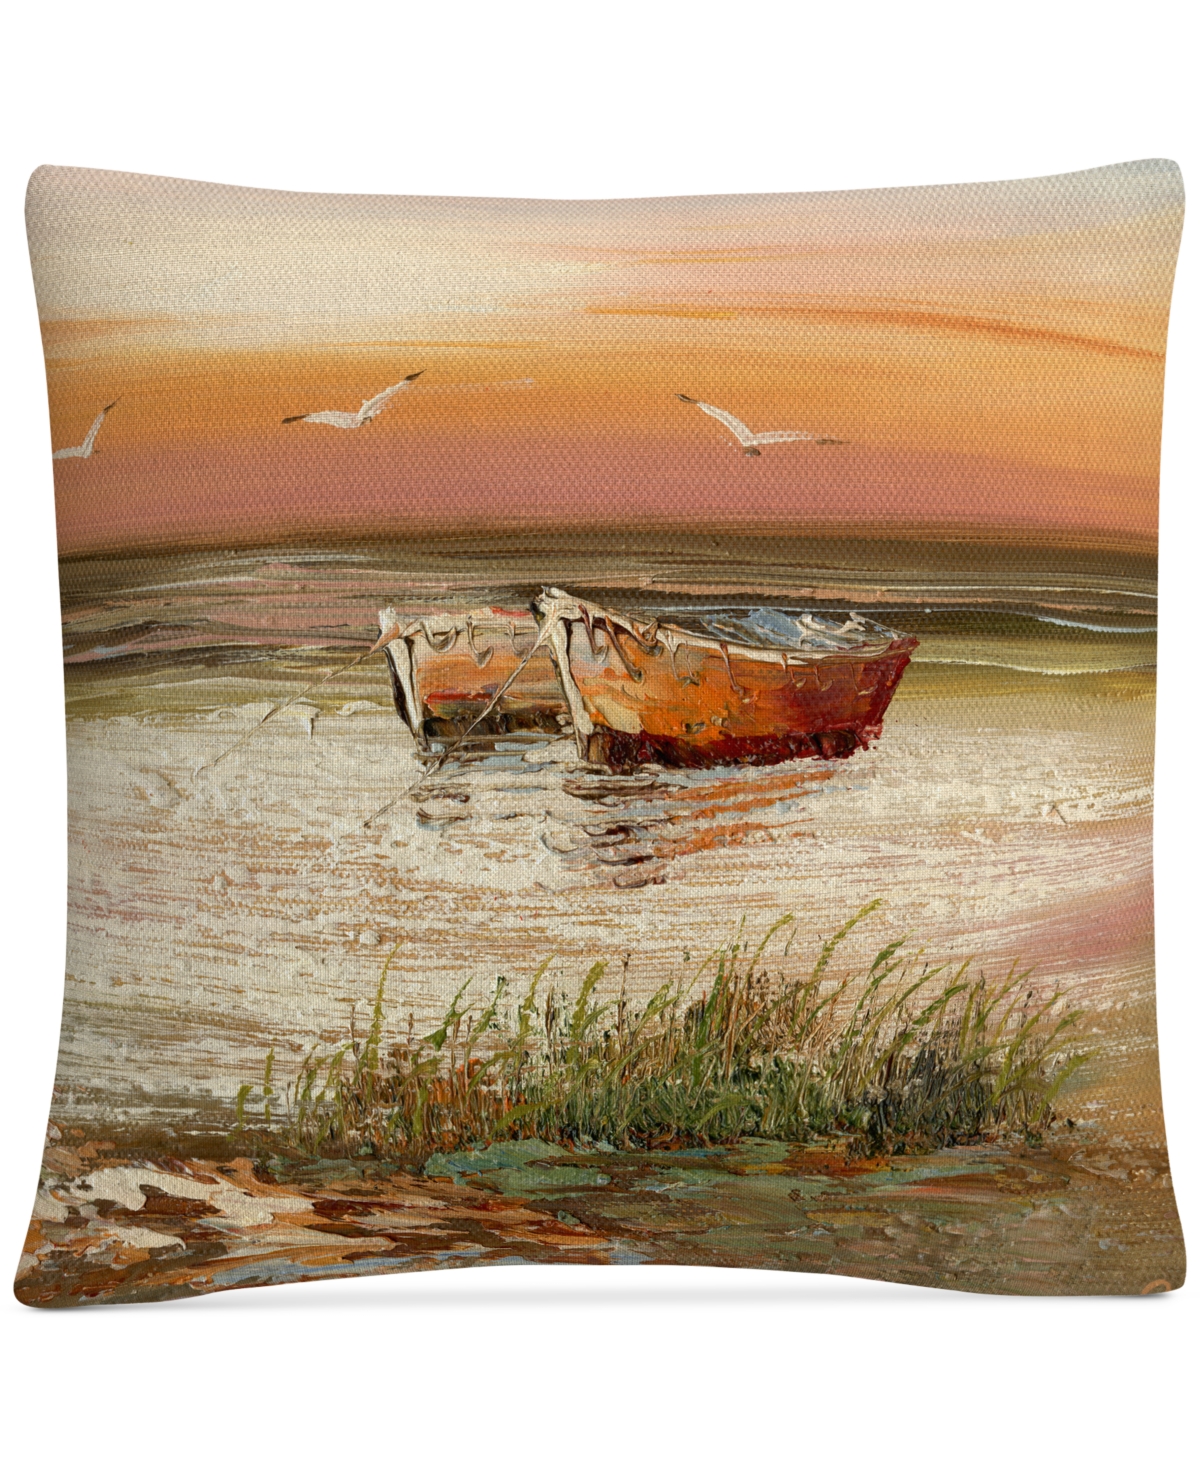 Rio Florida Sunset Decorative Pillow, 16 x 16